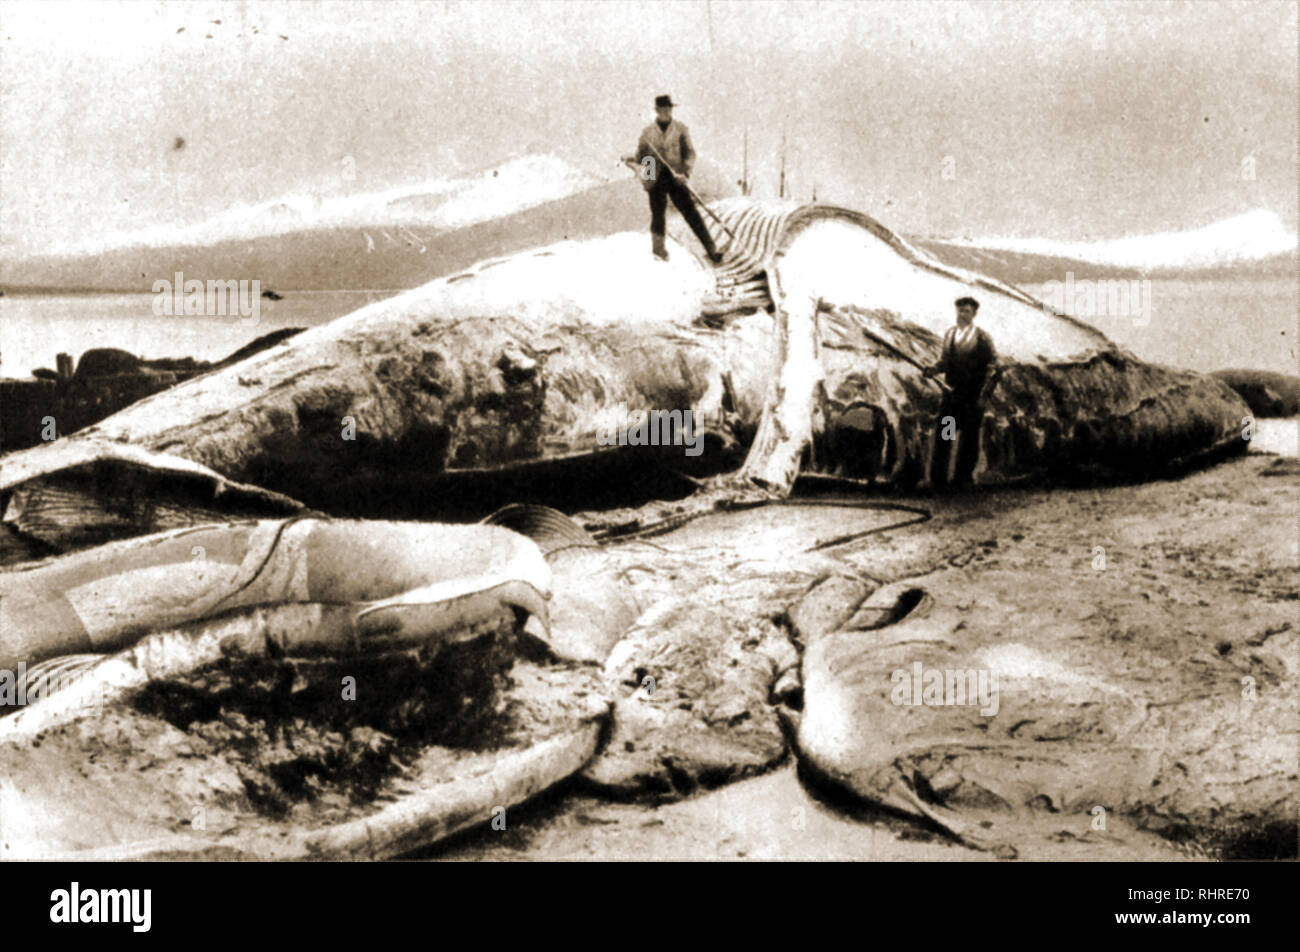 Caccia alle balene - Whale pesca.Una fotografia vintage di mostrare agli uomini la rimozione blubber da una balena. Foto Stock